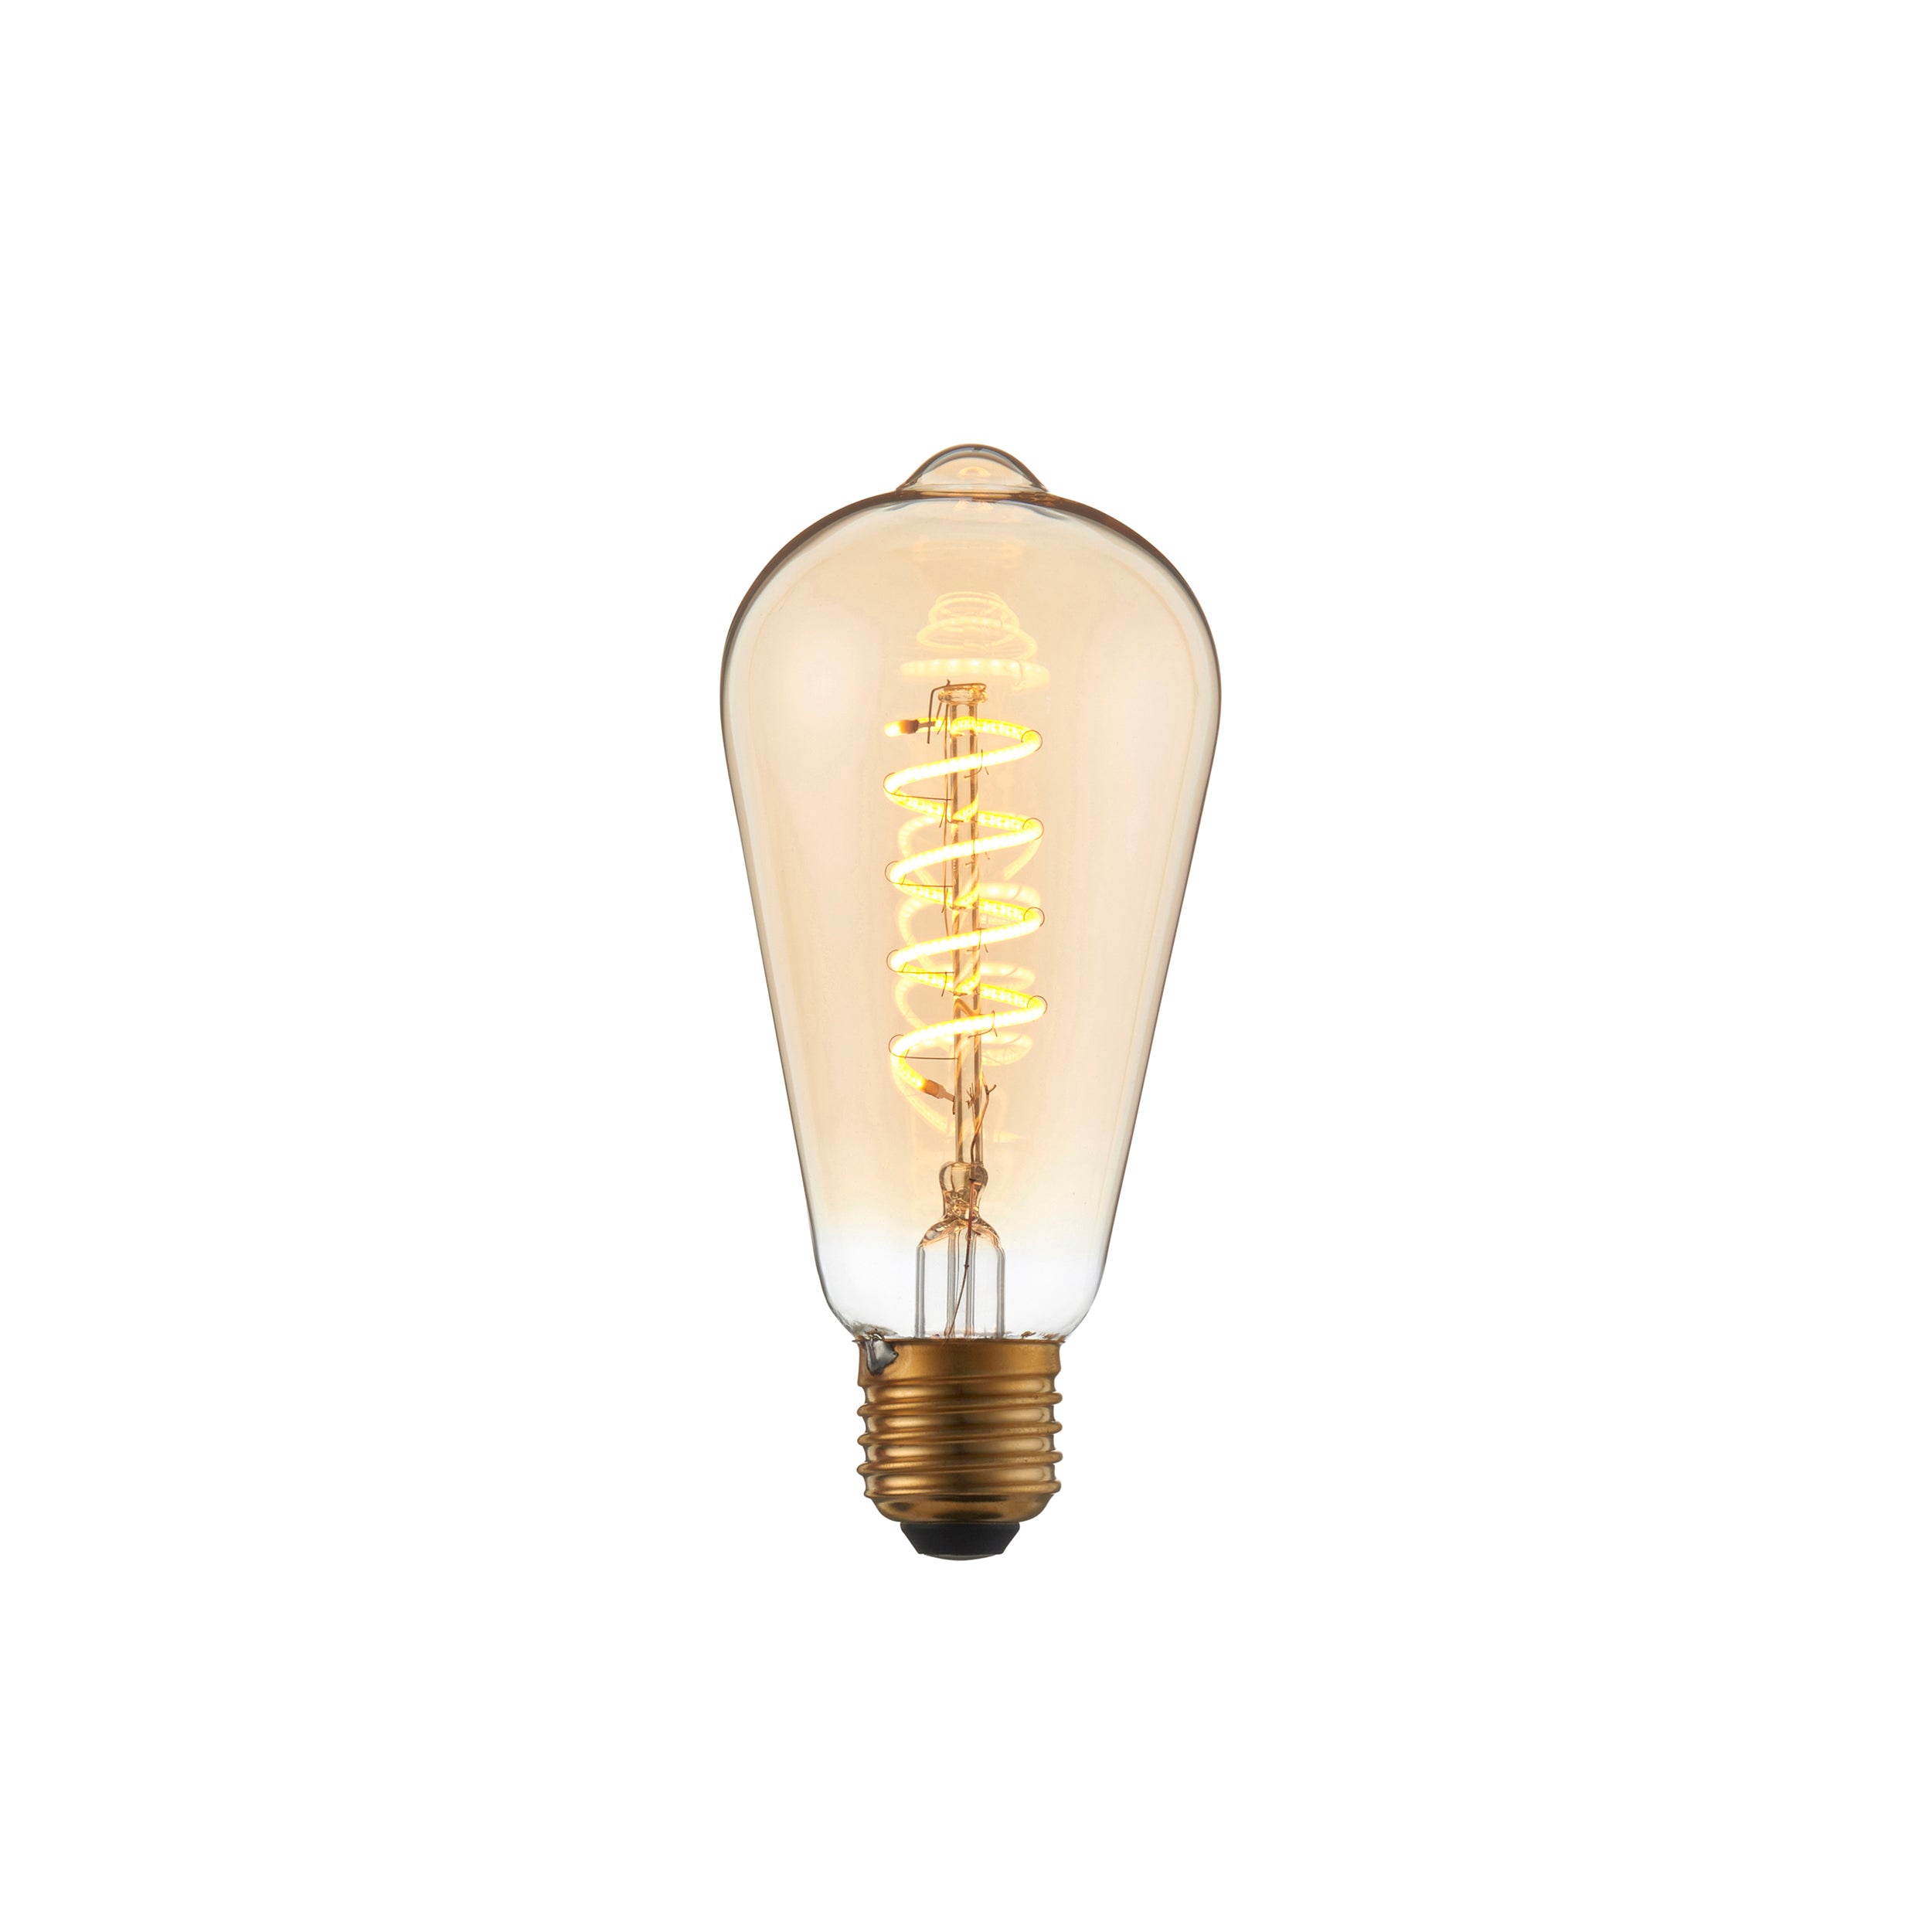 Twist LED Bulb. Amber Glass